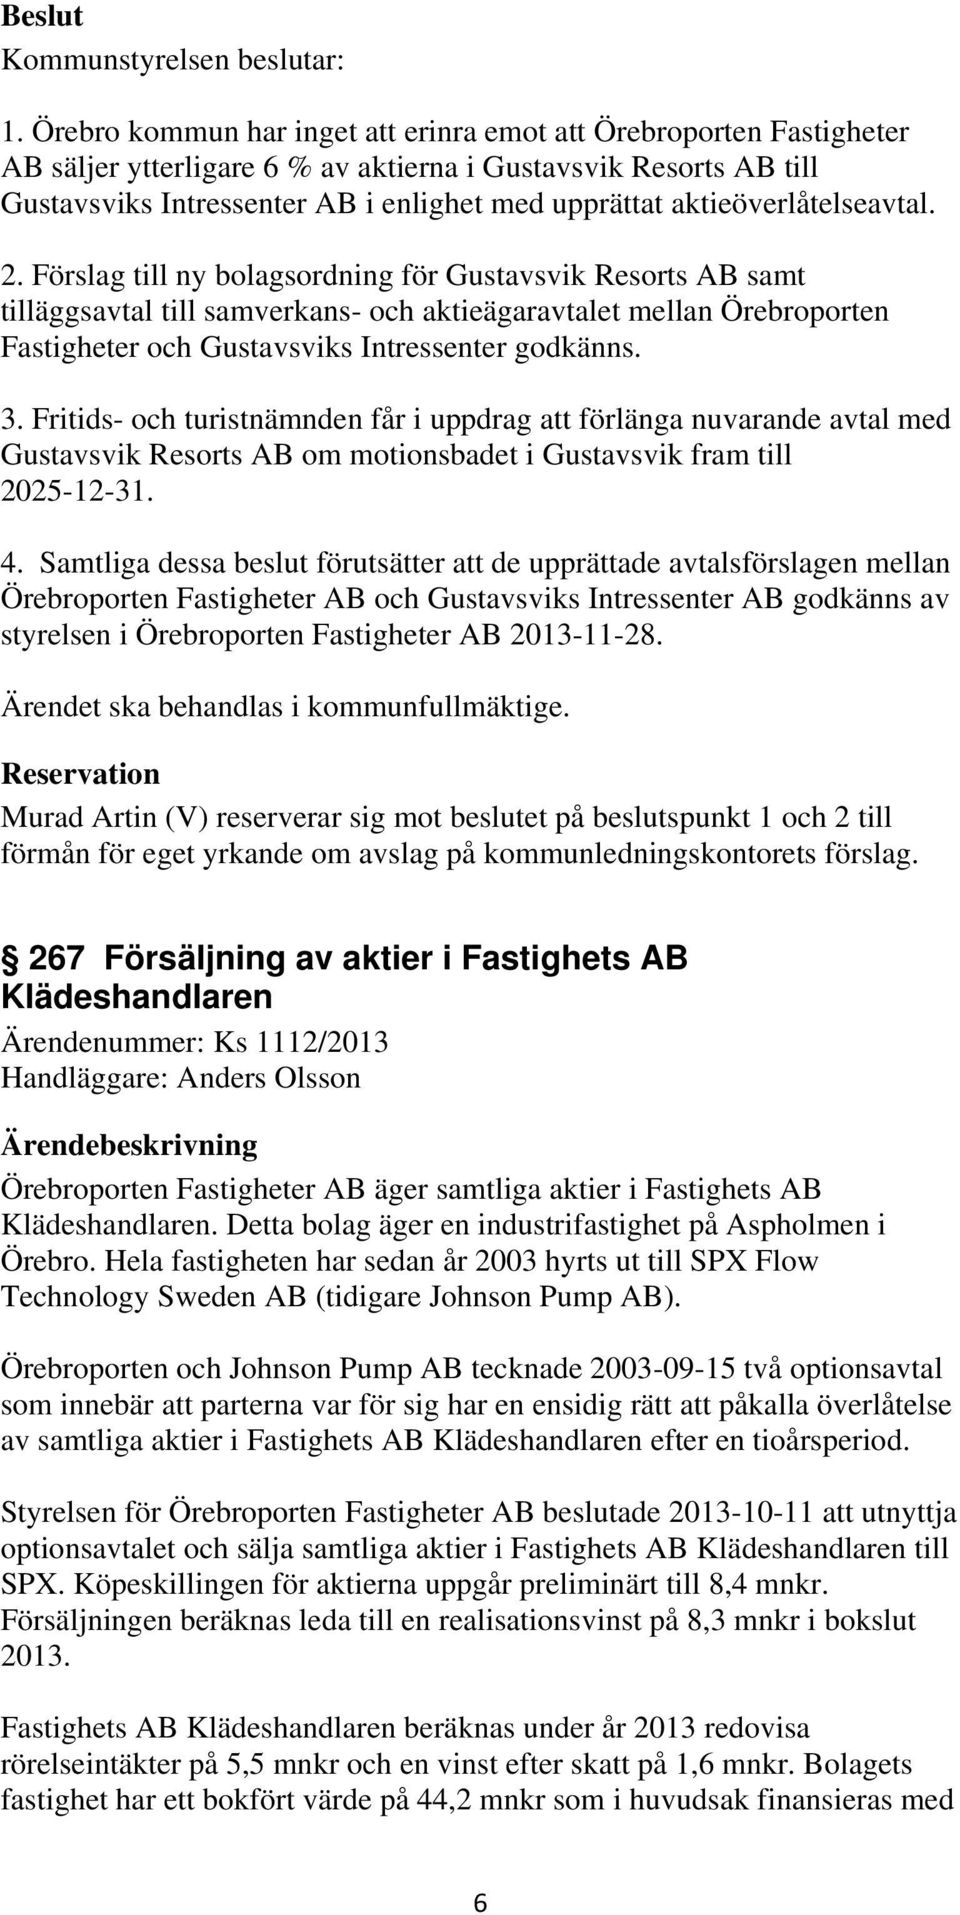 Förslag till ny bolagsordning för Gustavsvik Resorts AB samt tilläggsavtal till samverkans- och aktieägaravtalet mellan Örebroporten Fastigheter och Gustavsviks Intressenter godkänns. 3.